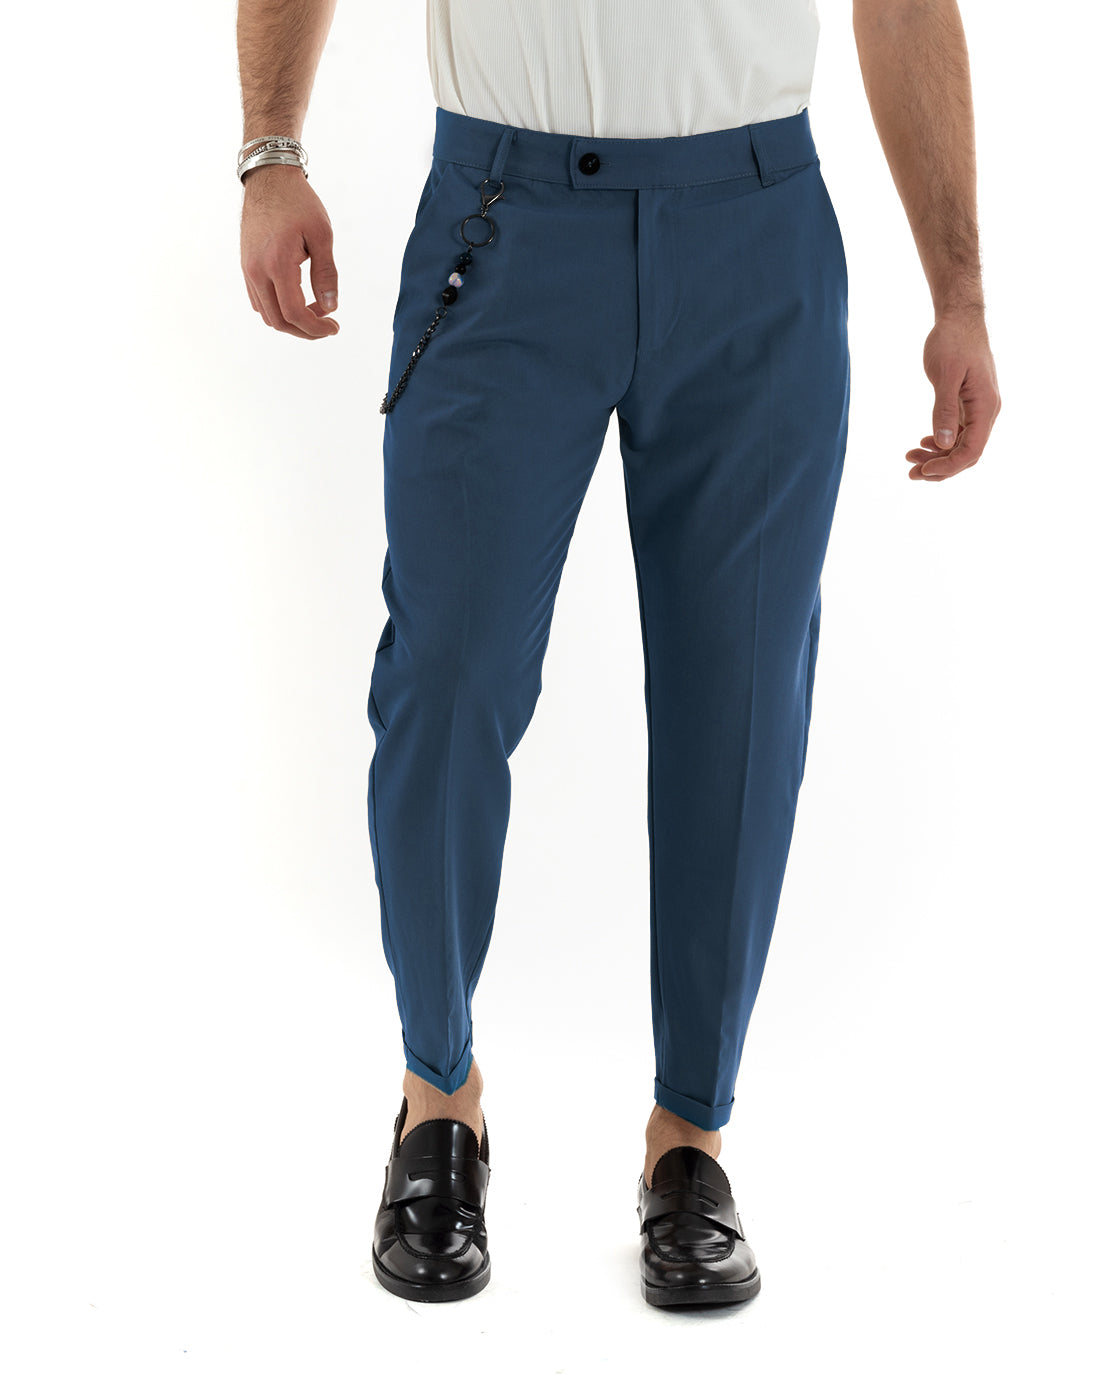 Pantaloni Uomo Viscosa Tasca America Classico Abbottonatura Allungata Casual Blu Royal GIOSAL-P5958A